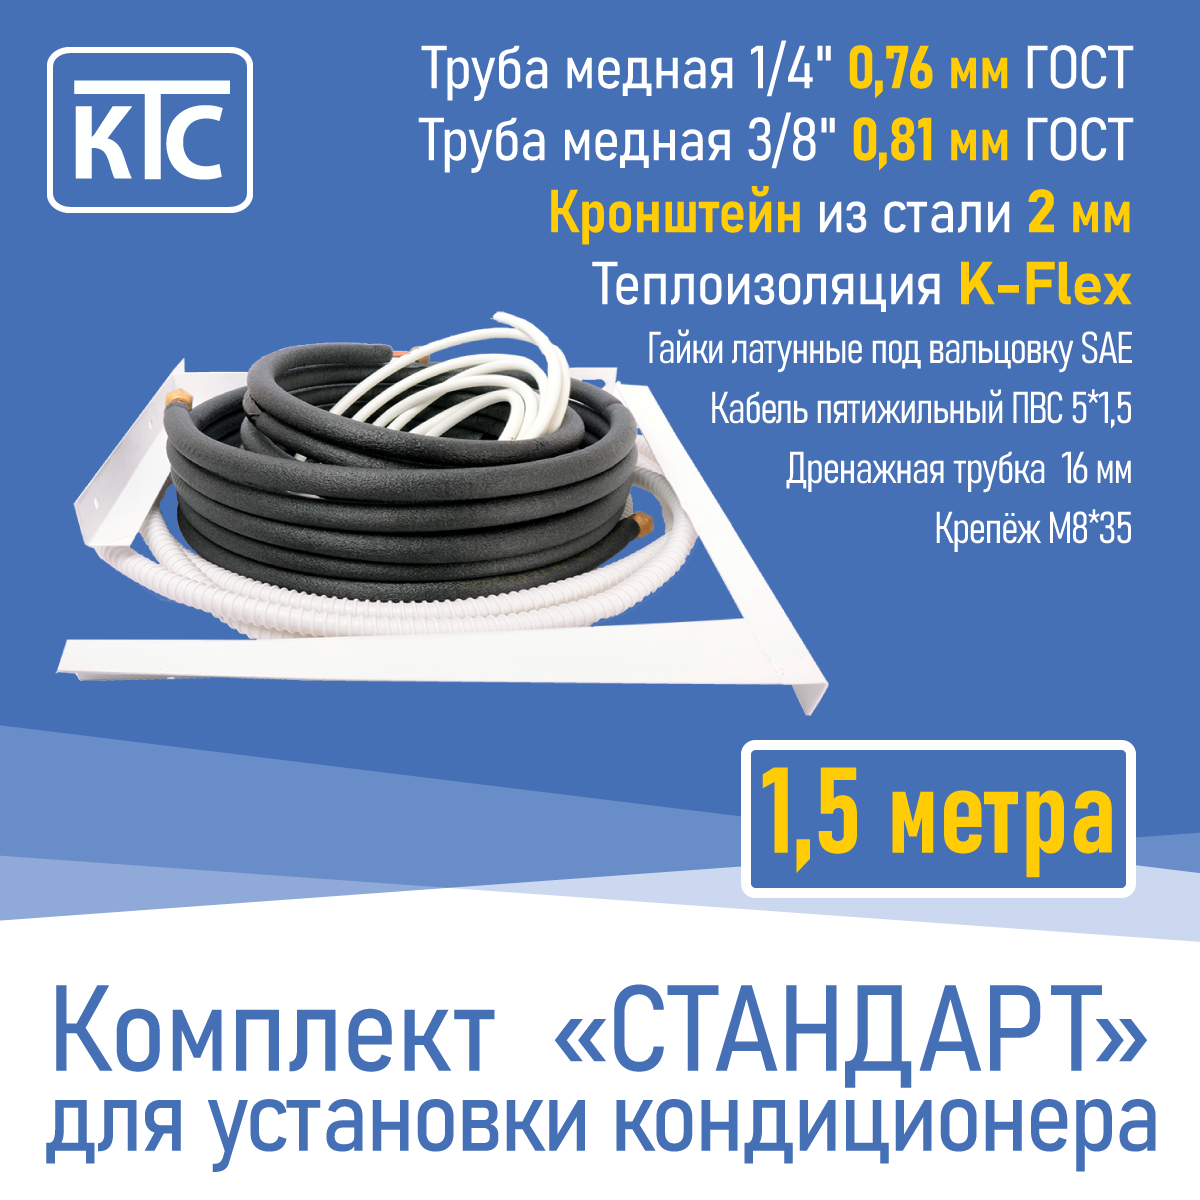 Готовый комплект для монтажа кондиционера 15 метра "Стандарт" (20955)